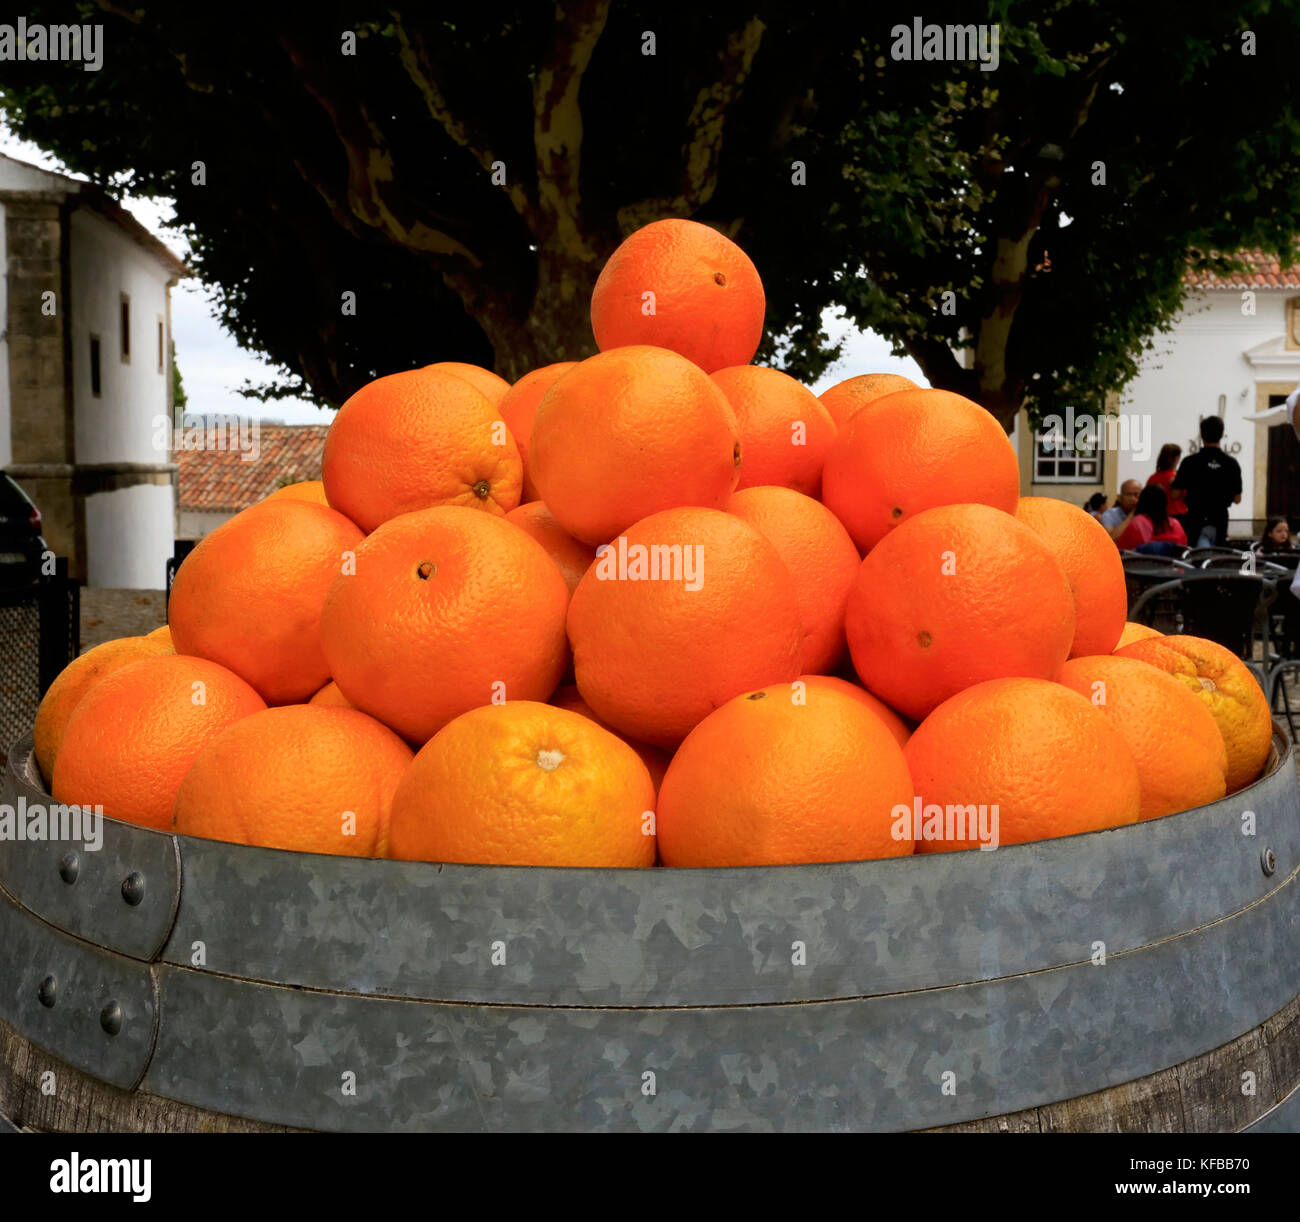 Visualizzazione di arance Foto Stock